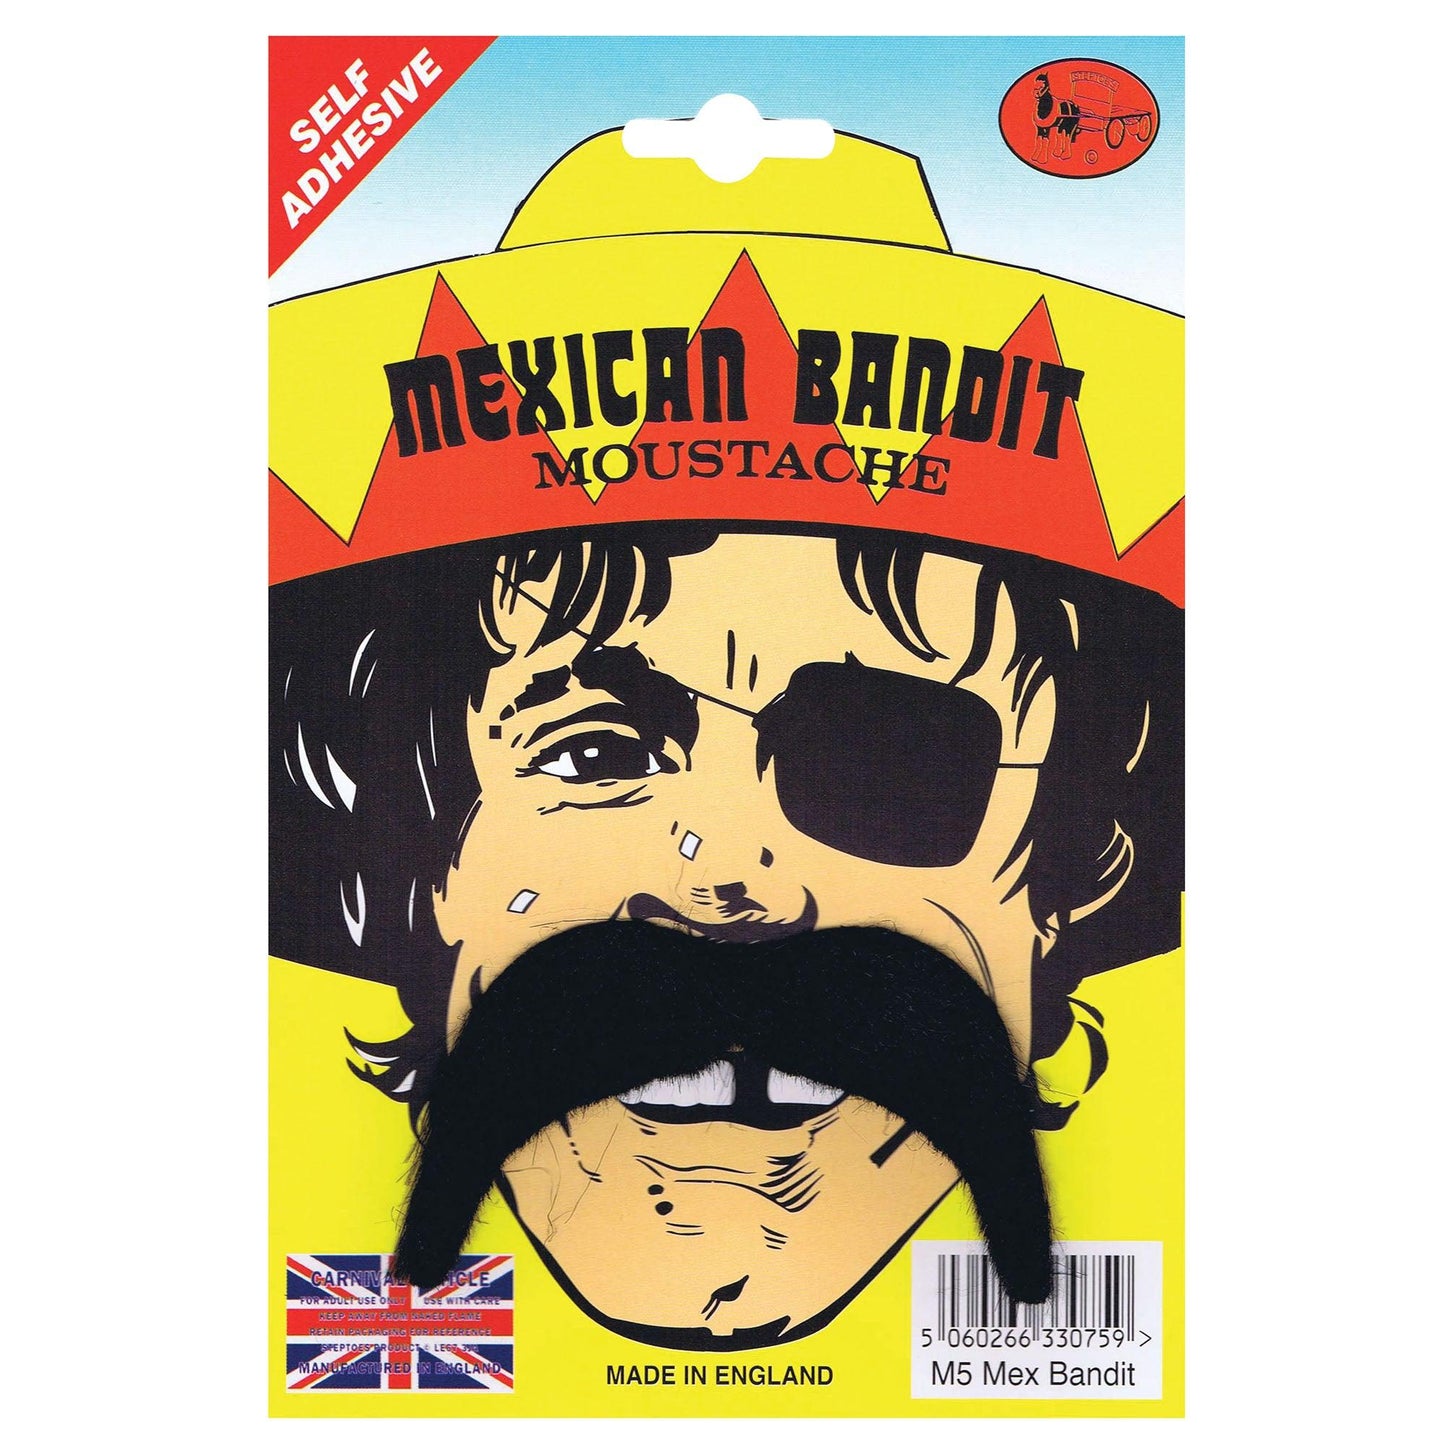 Mexican Bandit Moustache - Labreeze